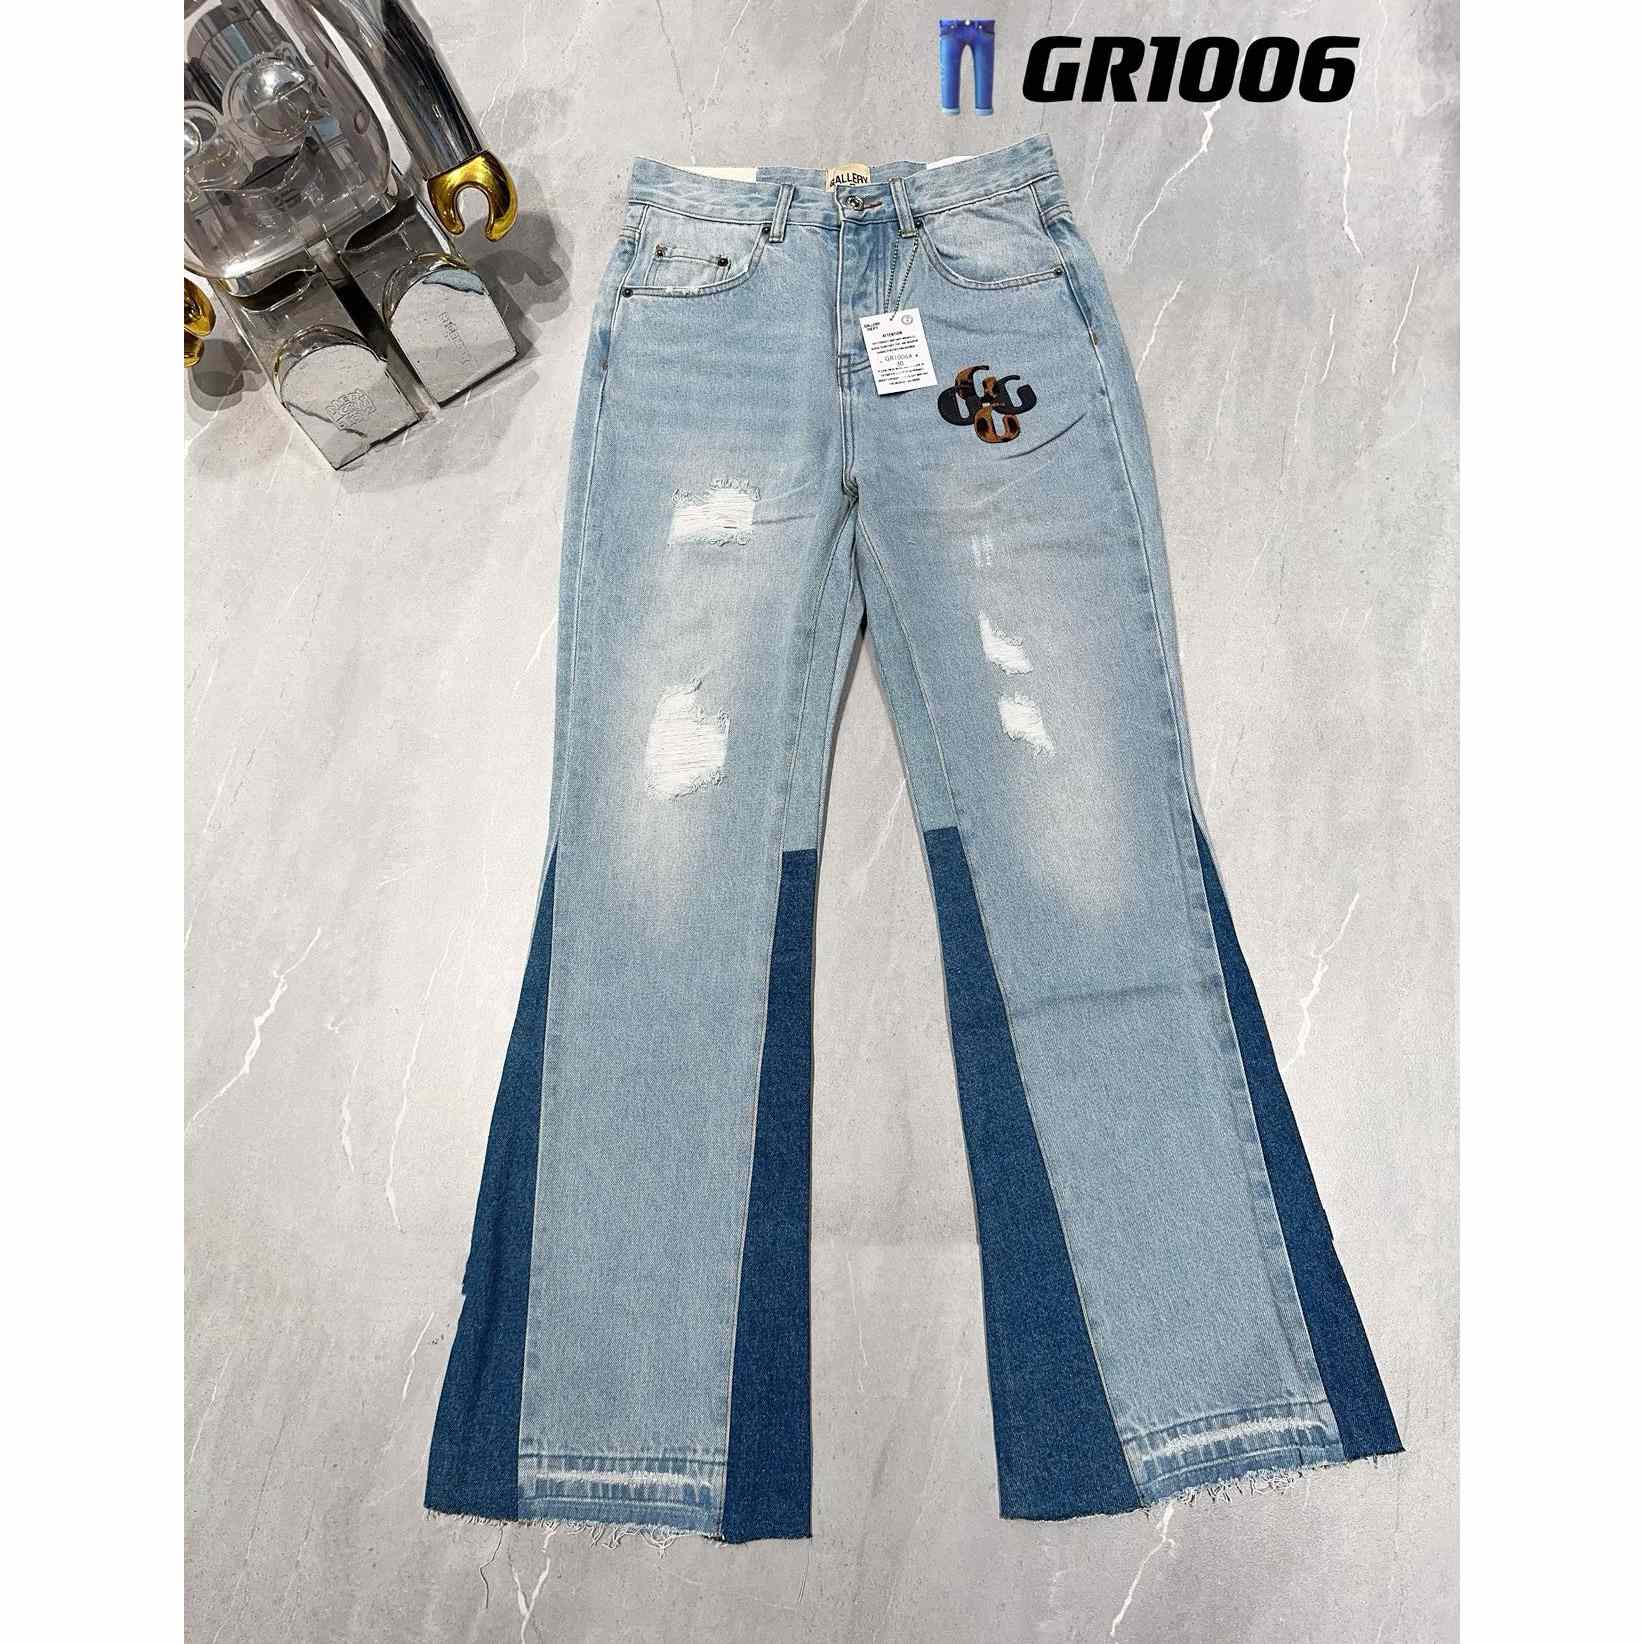 Gallery Dept. Jeans   GR1006 - DesignerGu